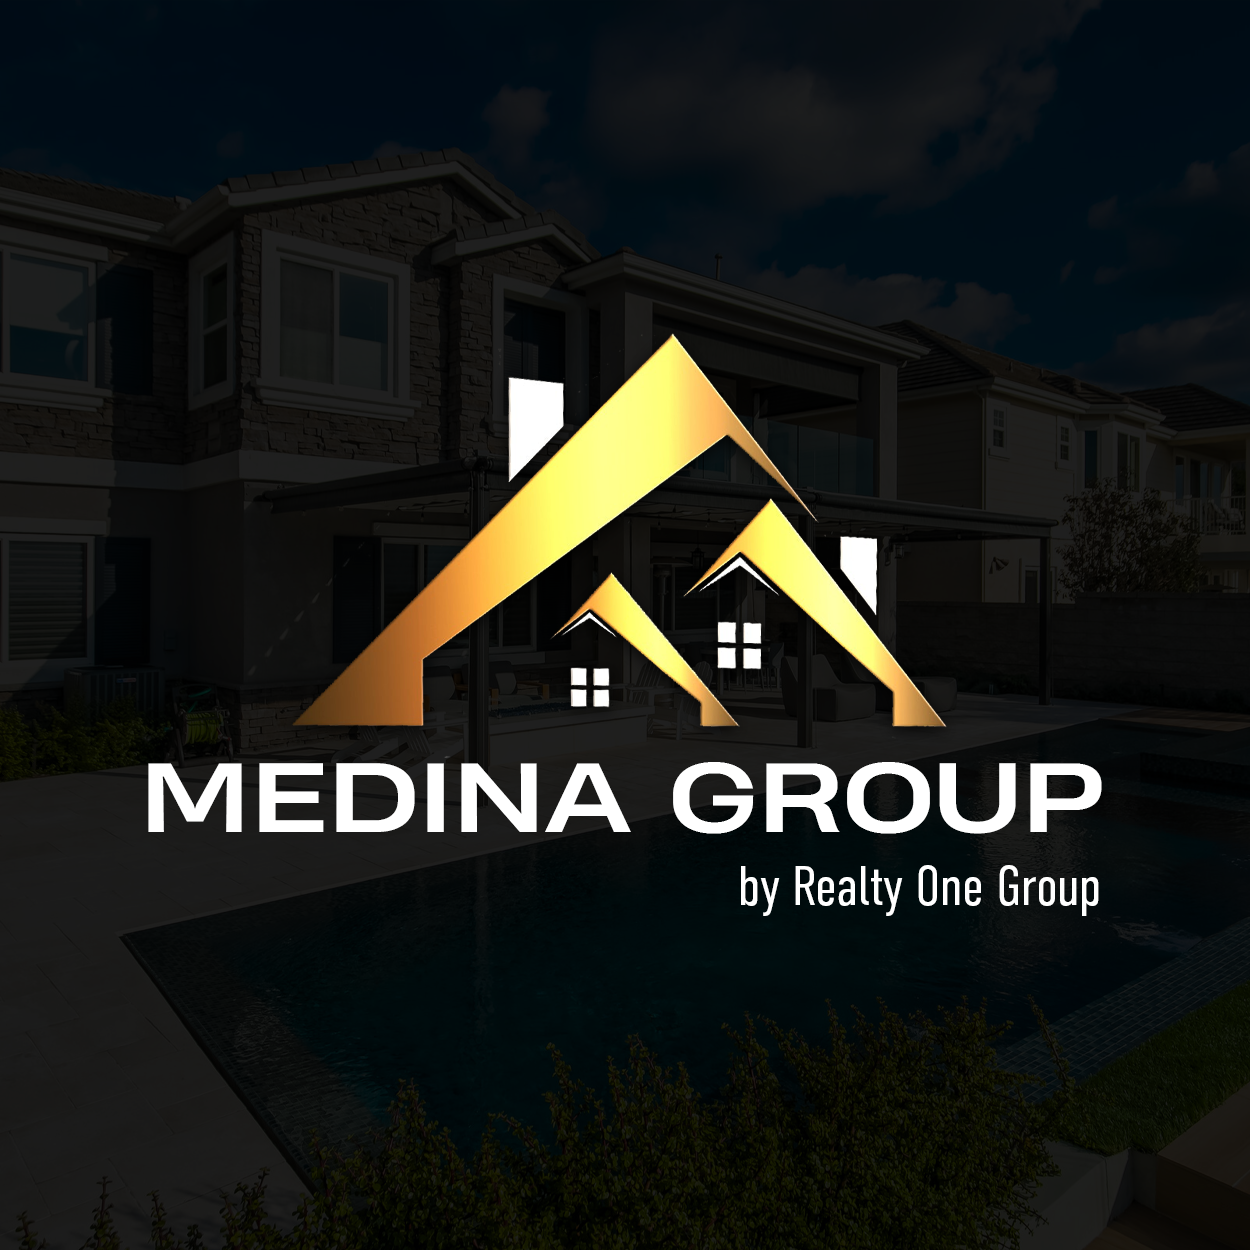 Medina Real Estate Salem: Buy Home in Salem | Real Estate Agents Salem